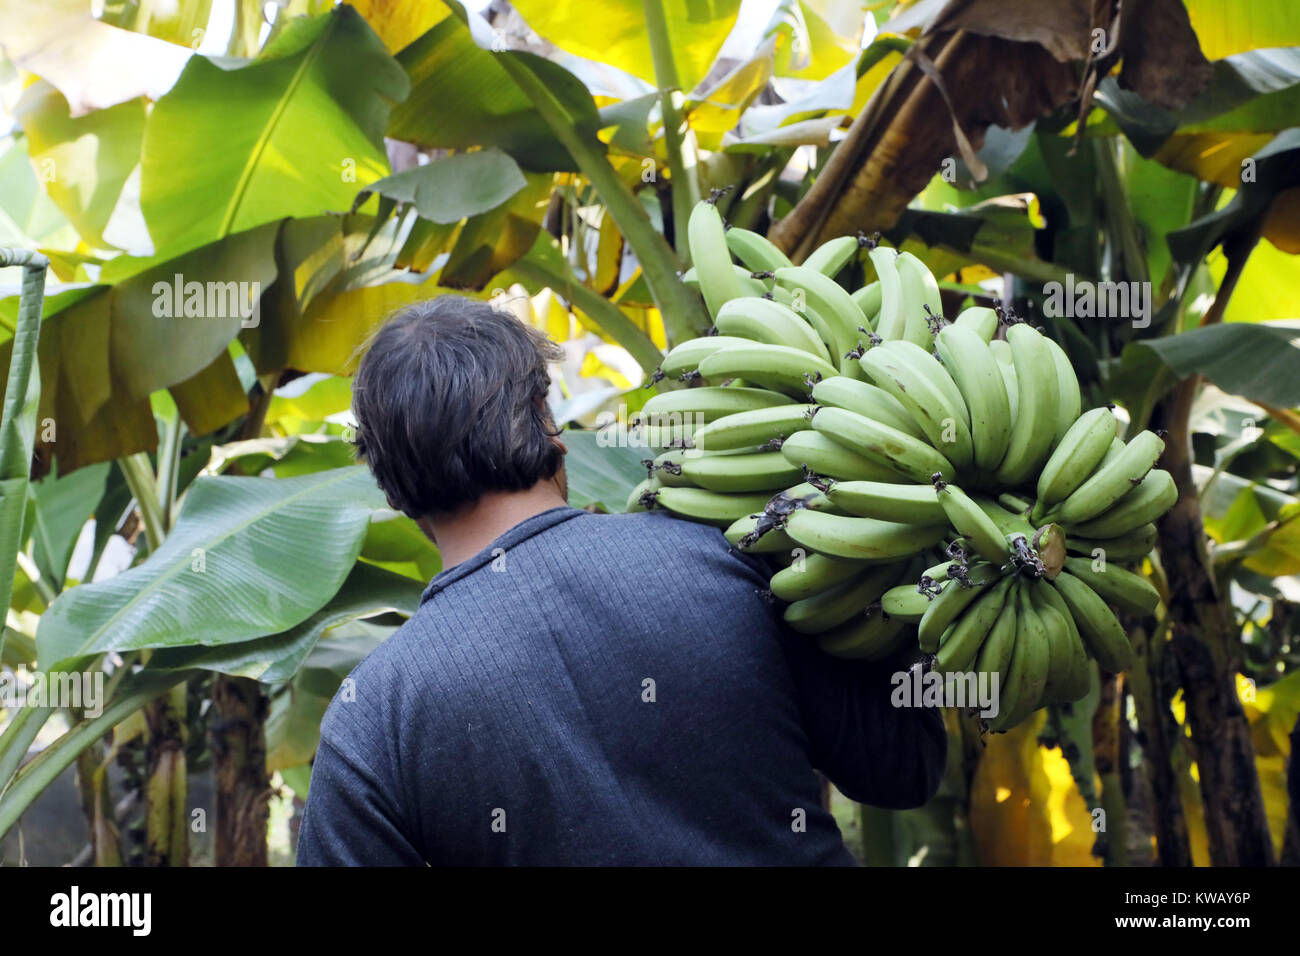 Страны выращивающие бананы. Сбор урожая бананов. Сбор бананов на плантациях. Бананы в Туркменистане. В Туркменистане выращивают бананы.